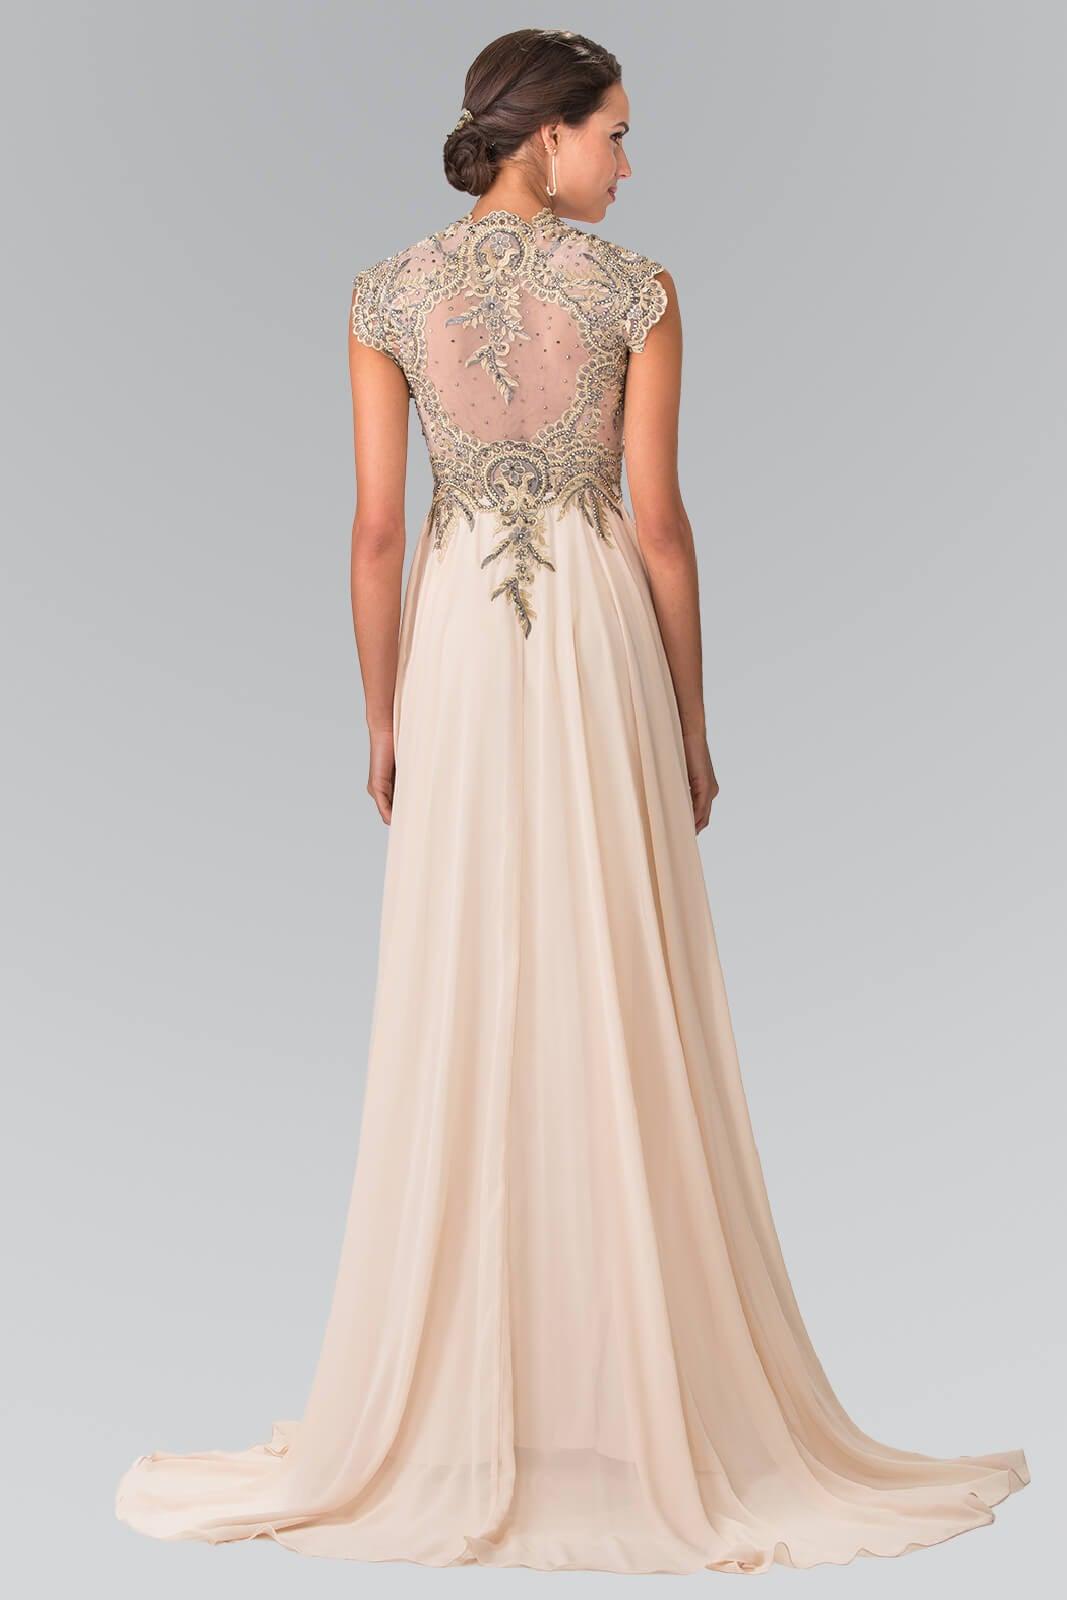 Prom Long Dress Formal Evening Gown - The Dress Outlet Elizabeth K